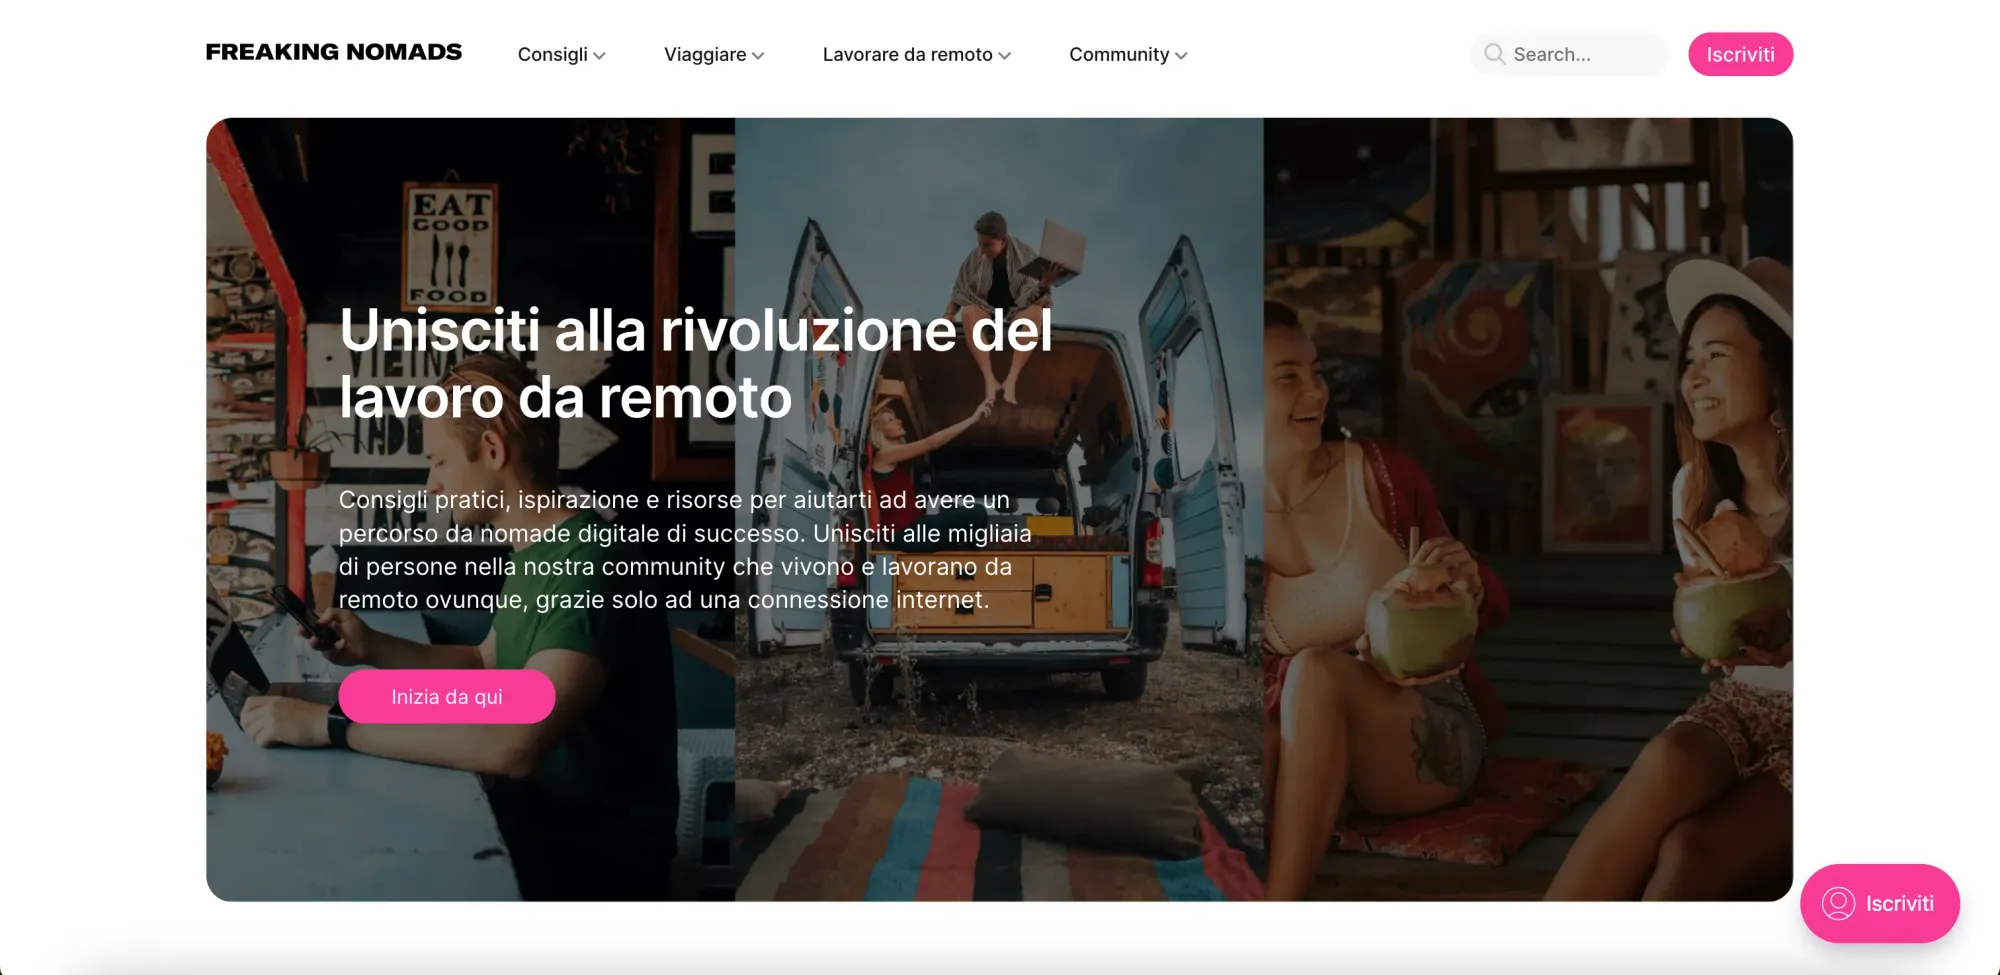 Freaking Nomads Italia, un blog di risorse per nomadi digitali e lavoratori da remoto